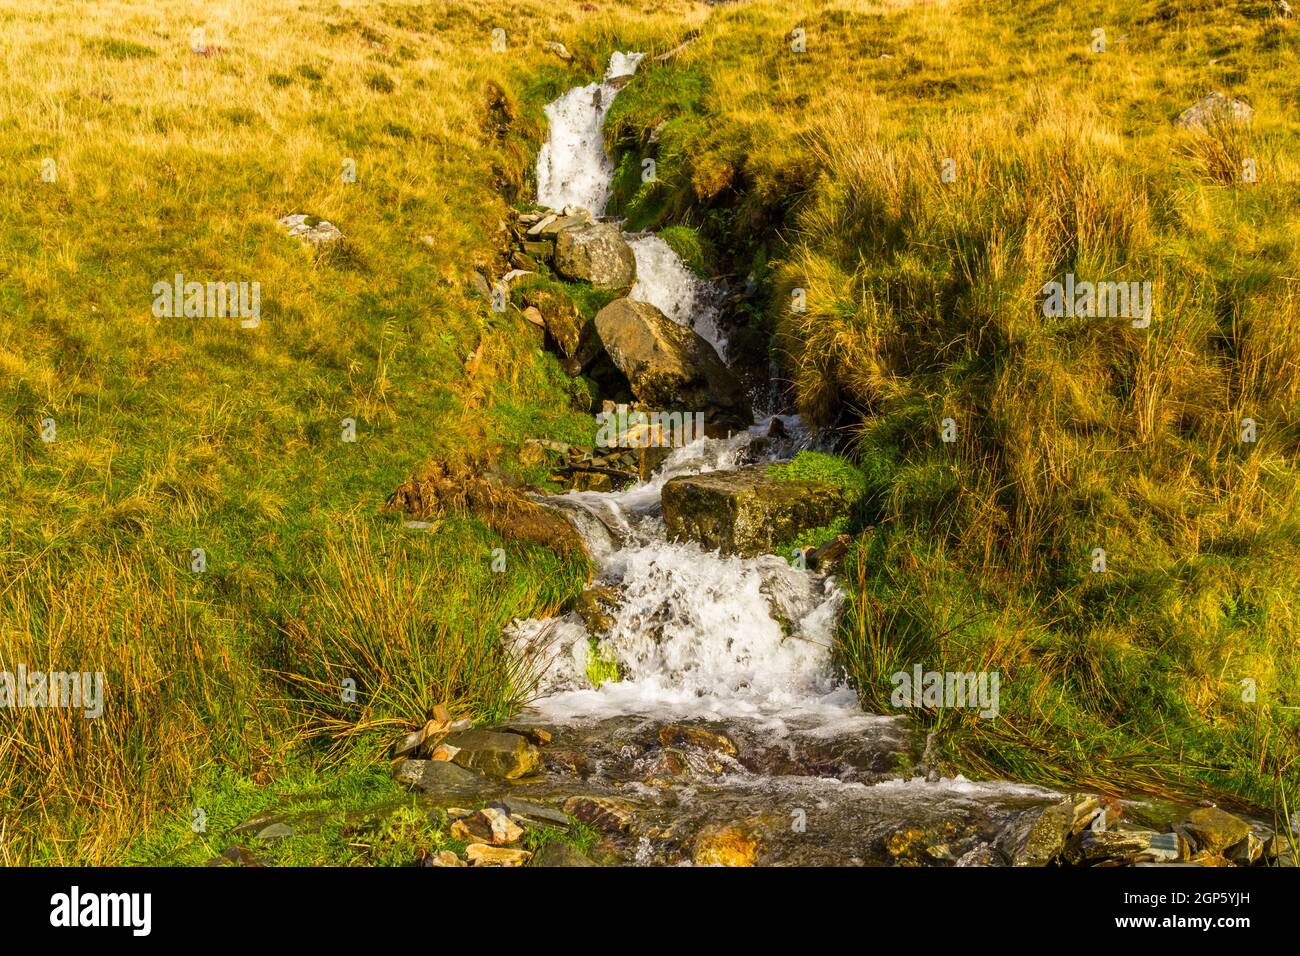 Cascade petit ruisseau après la pluie dans le pays de la lande, obturateur rapide, paysage. Banque D'Images